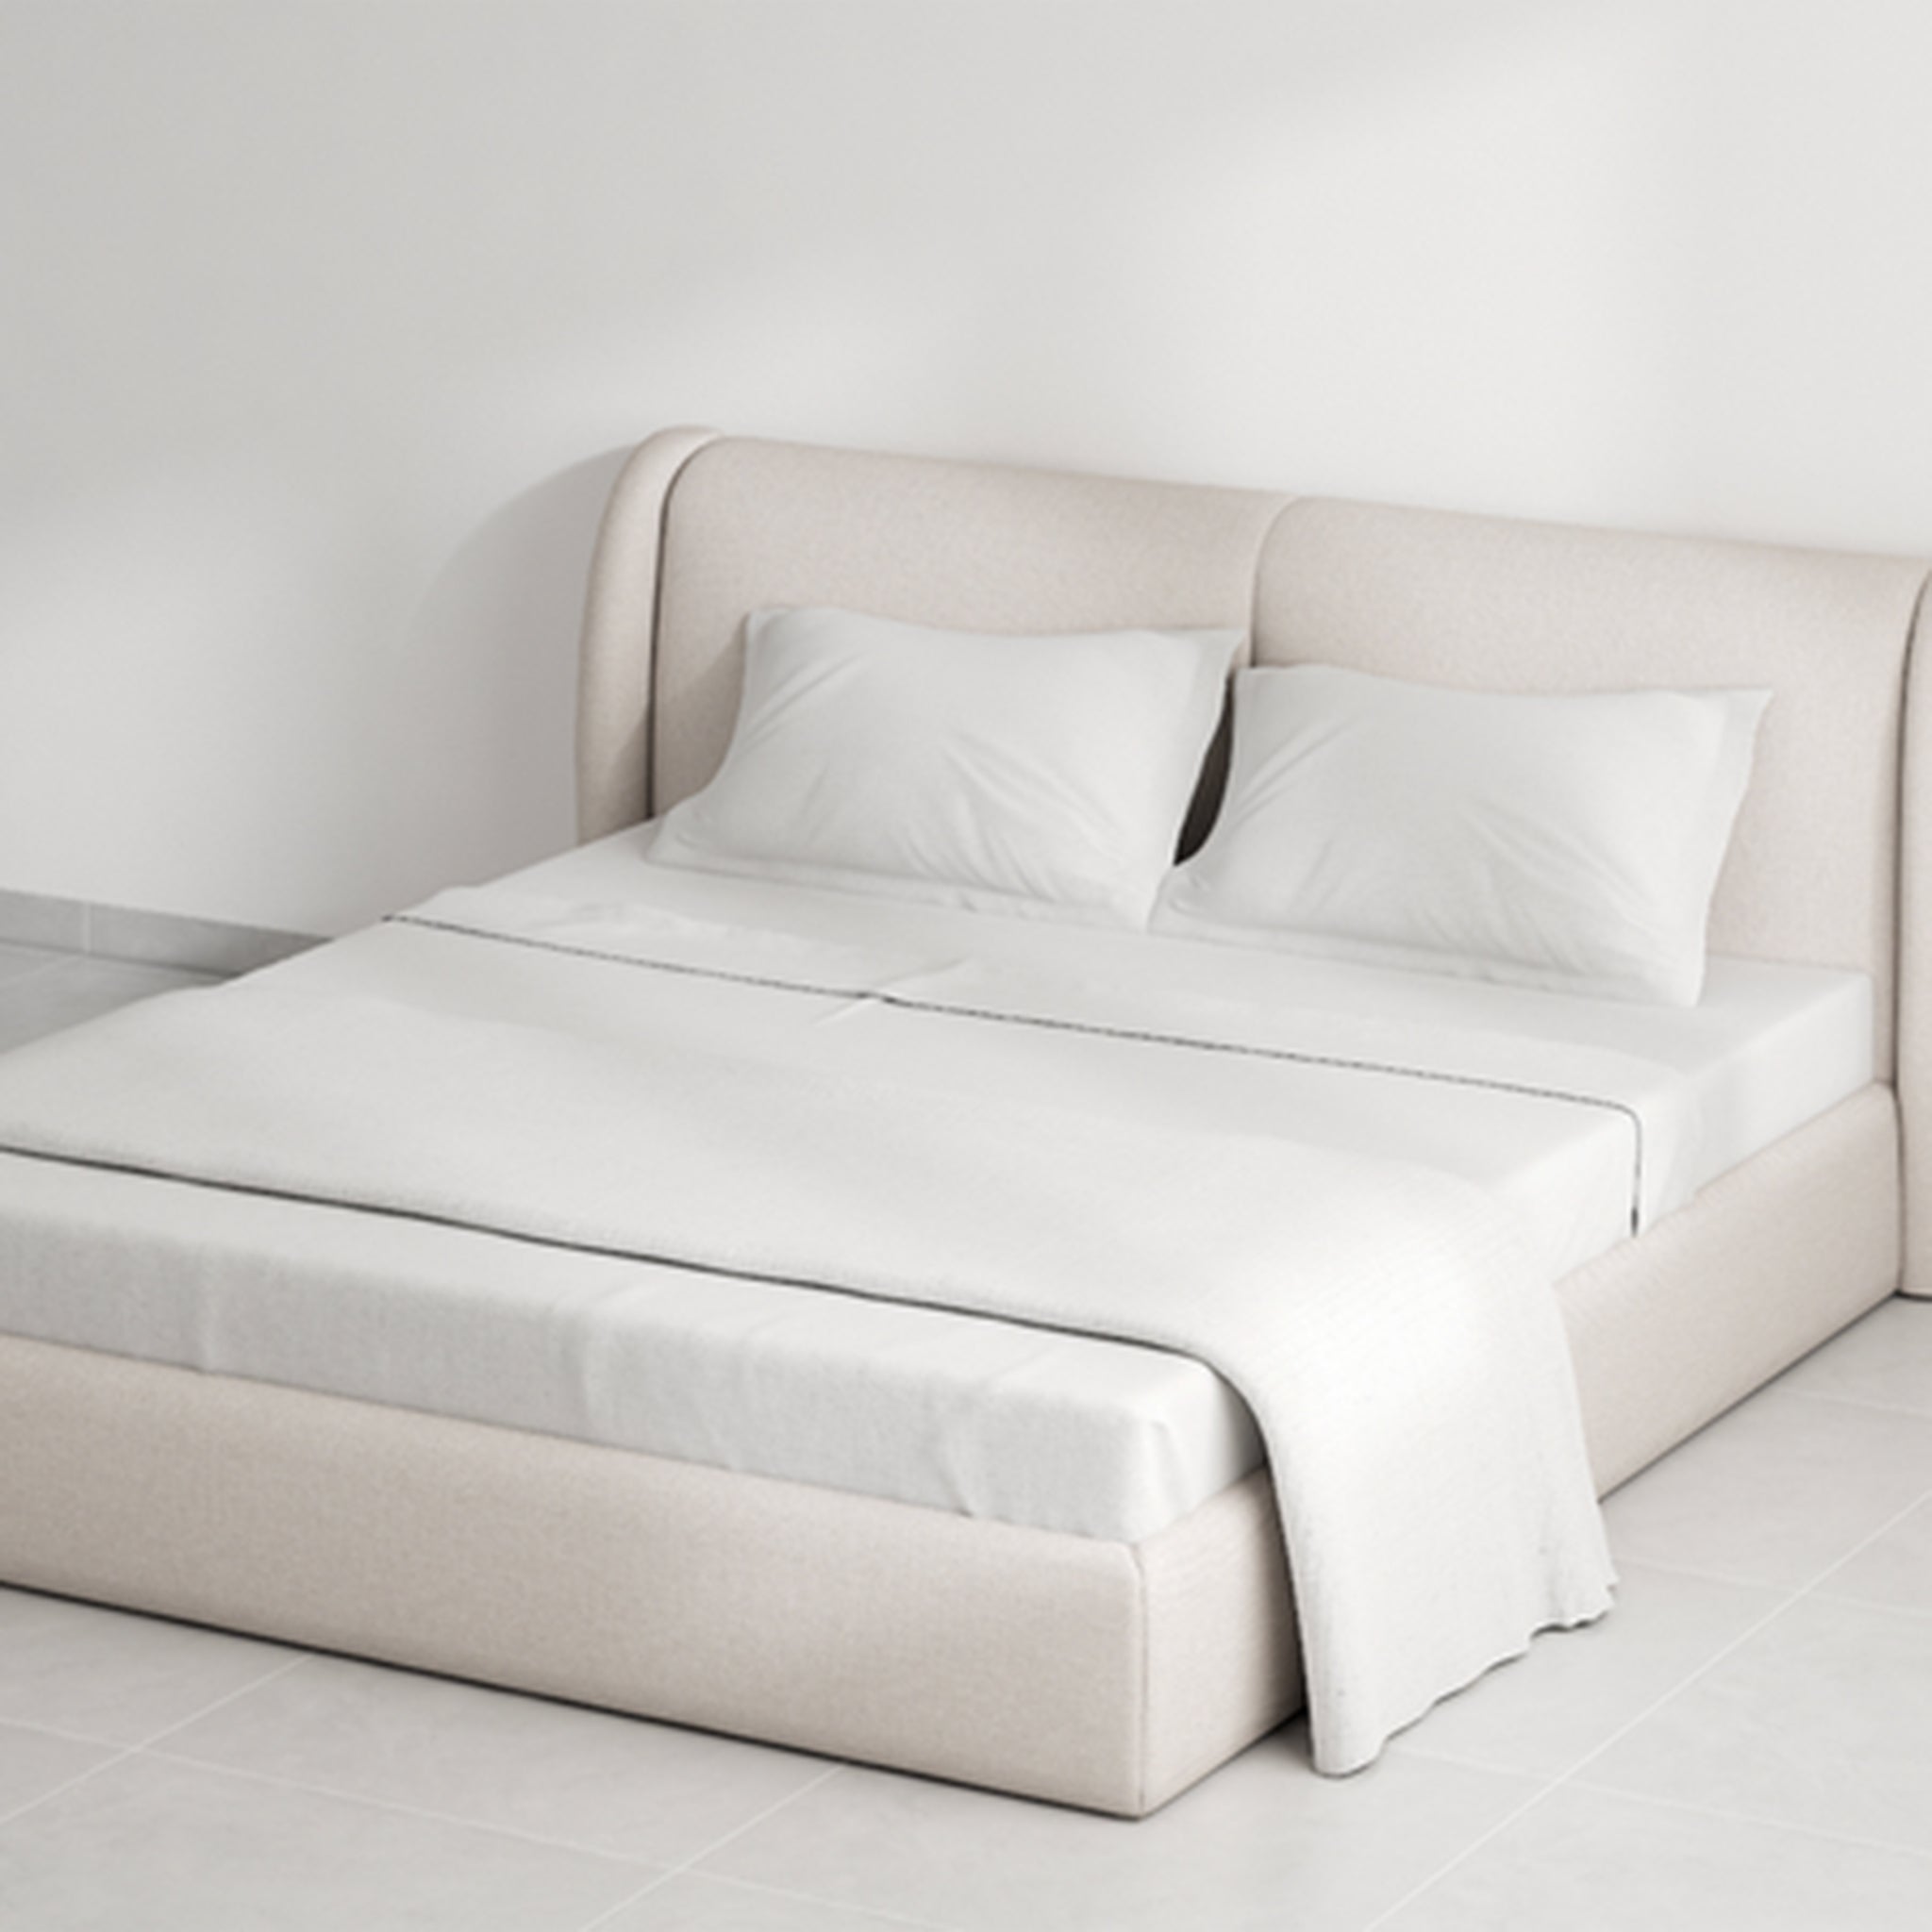 Elegant Bedroom Furniture - The Ashley Bed